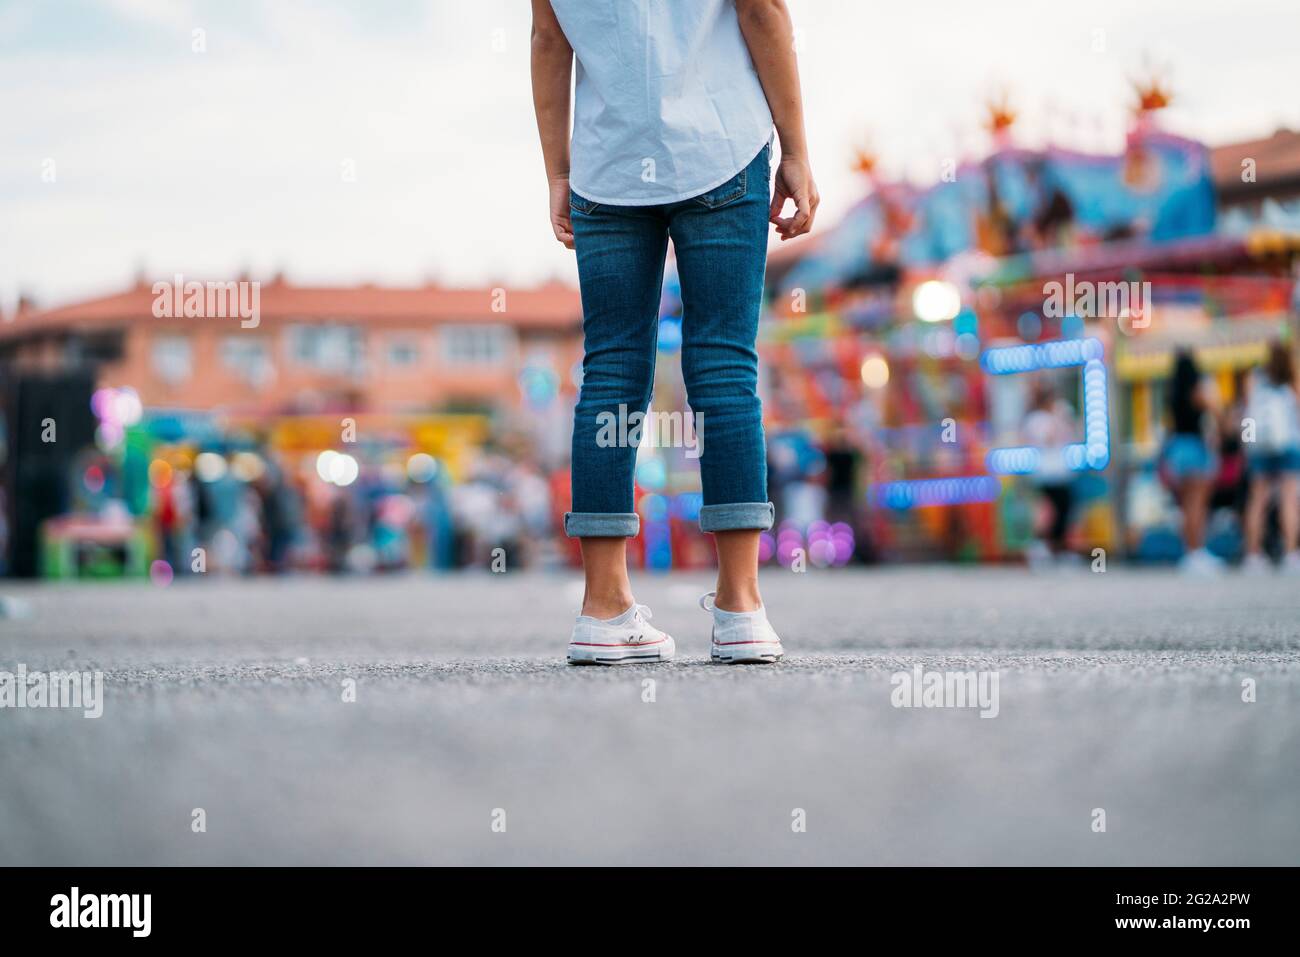 Rückansicht eines unerkennbaren kleinen Mädchens, das allein im Vergnügungspark steht Stockfoto